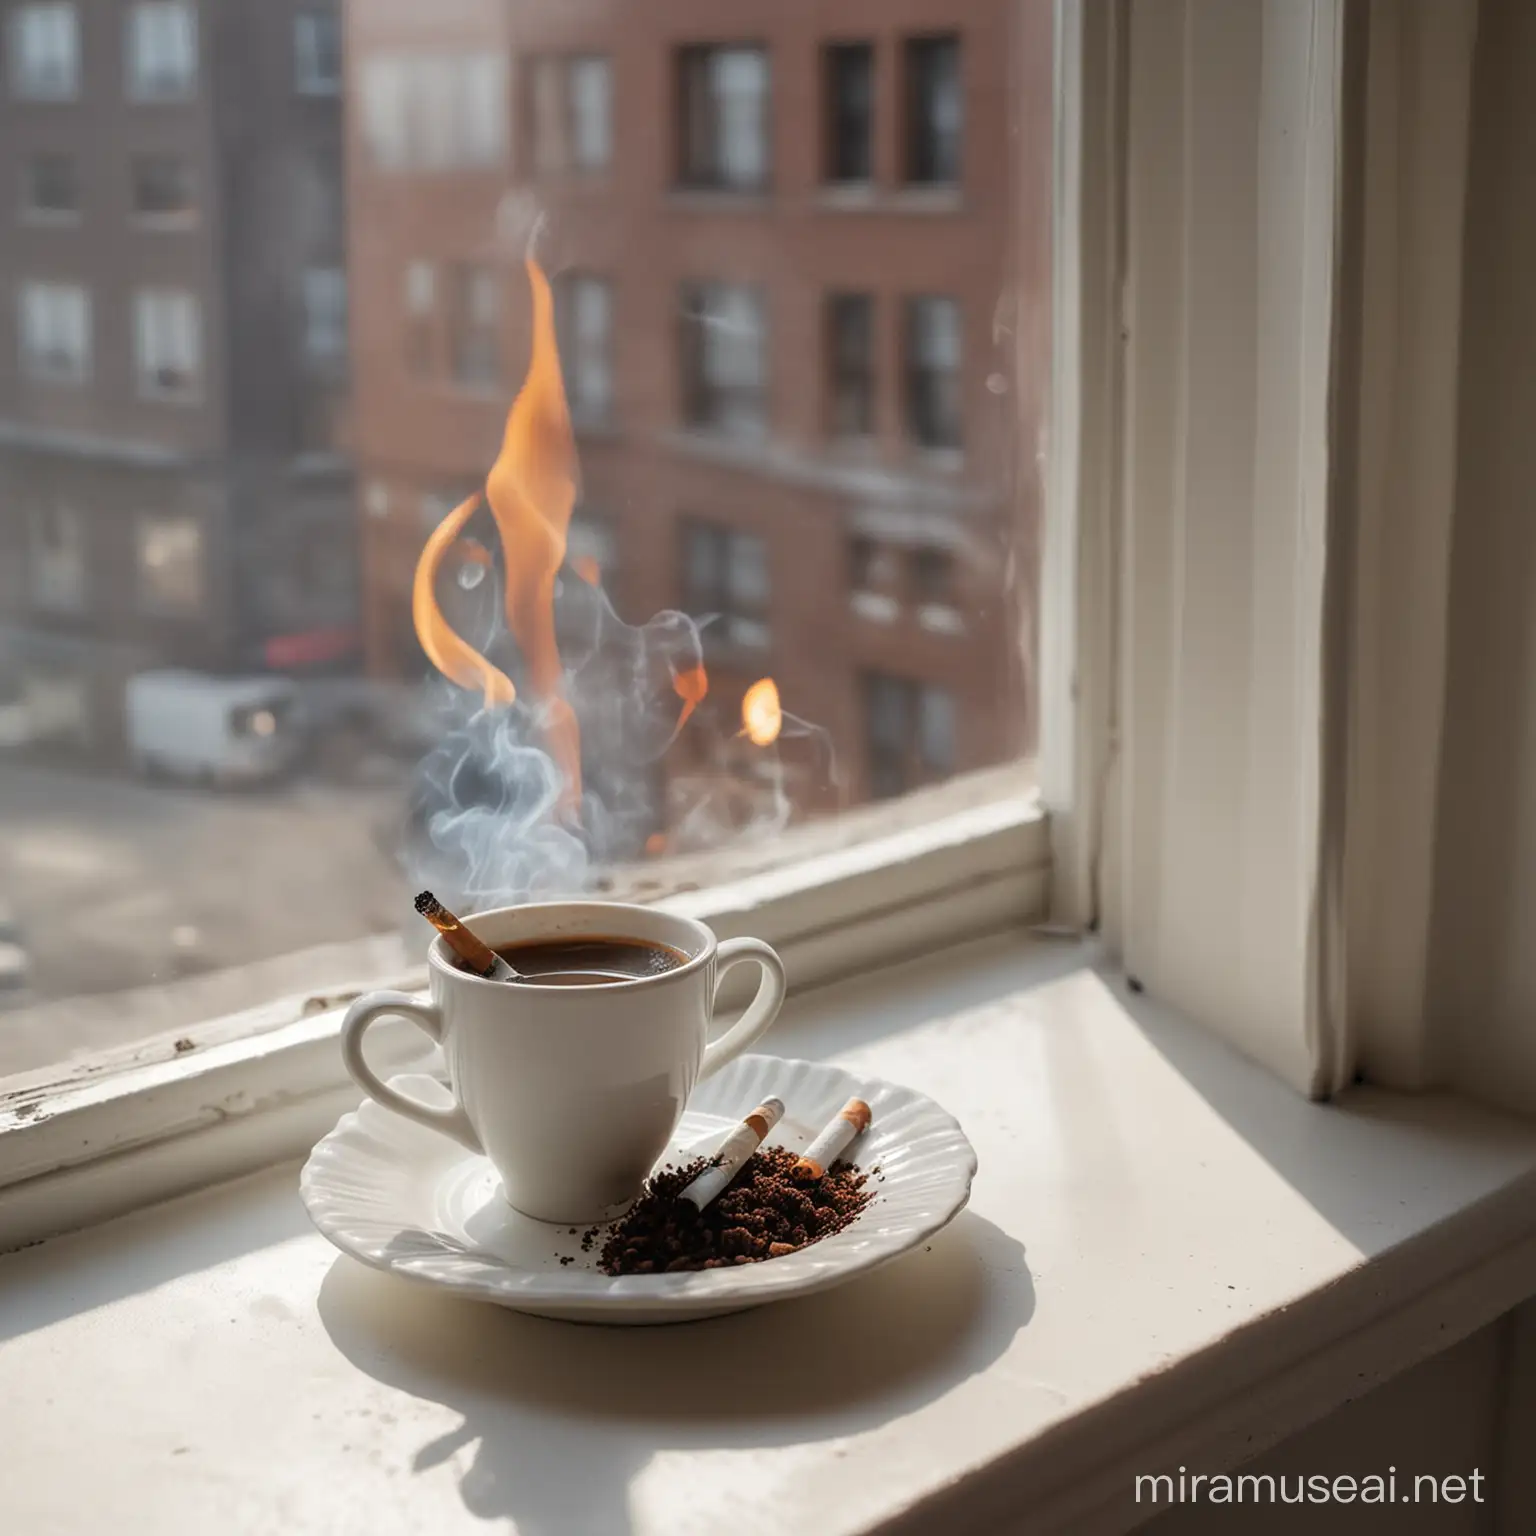 一只精致的咖啡杯放在窗台上，旁边有一个放了半只正在燃烧的香烟的烟灰缸。